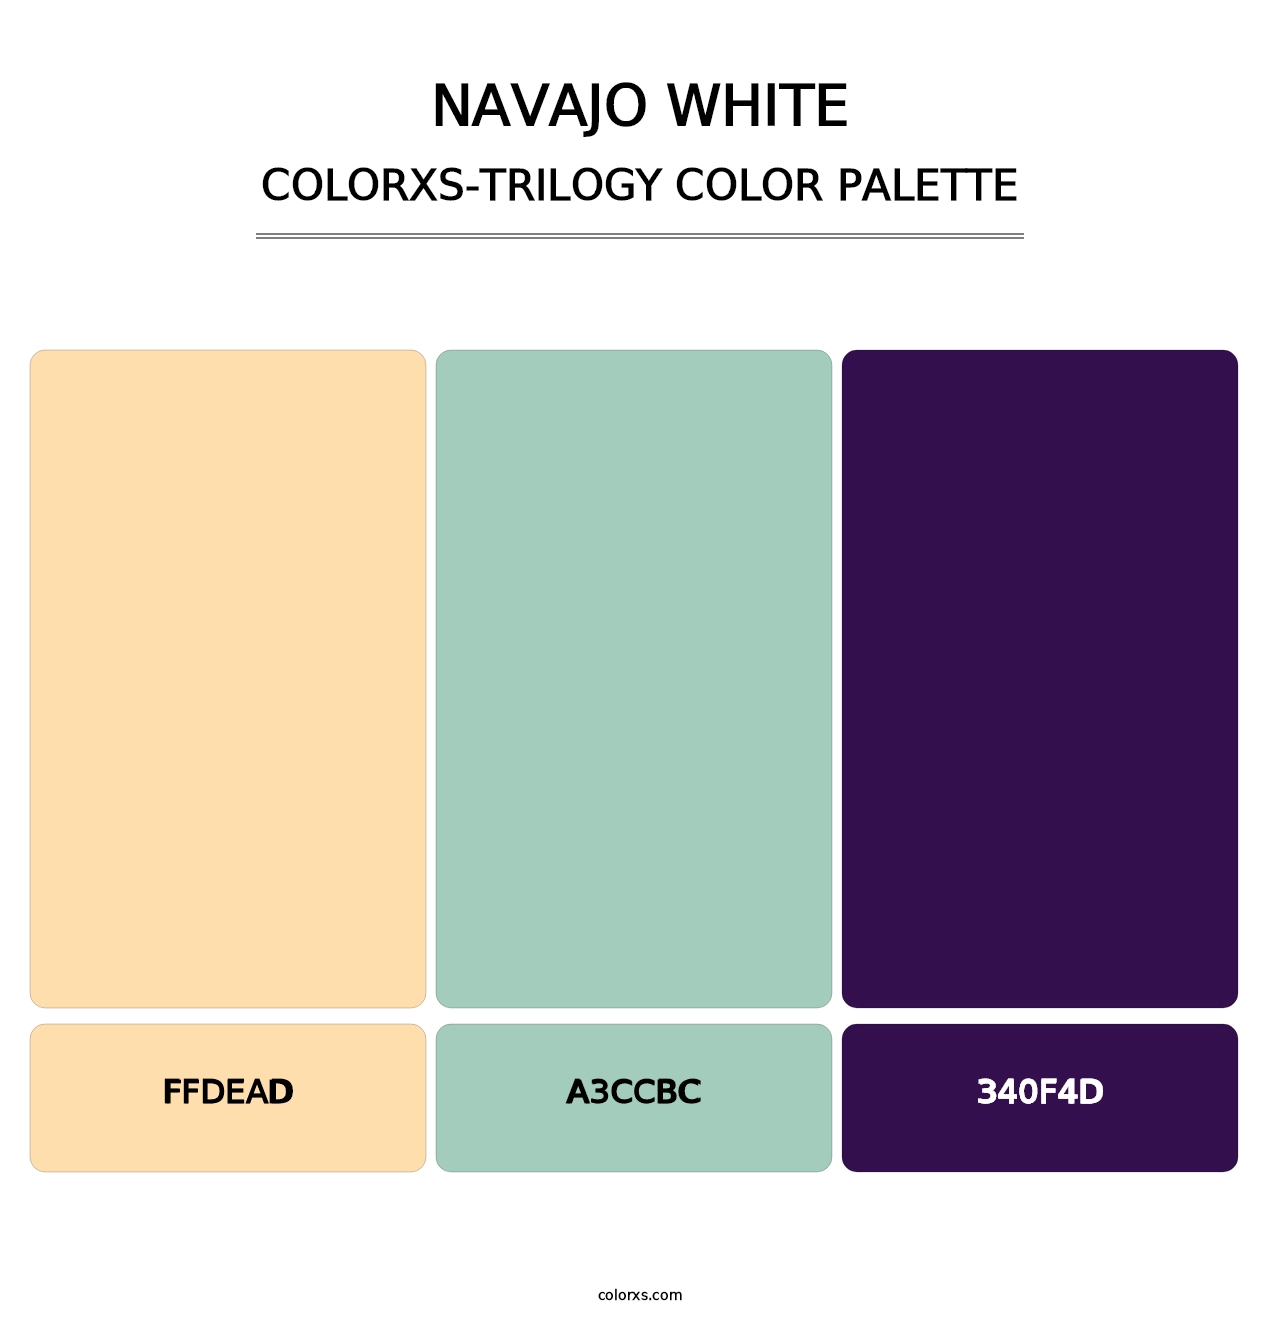 Navajo White - Colorxs Trilogy Palette